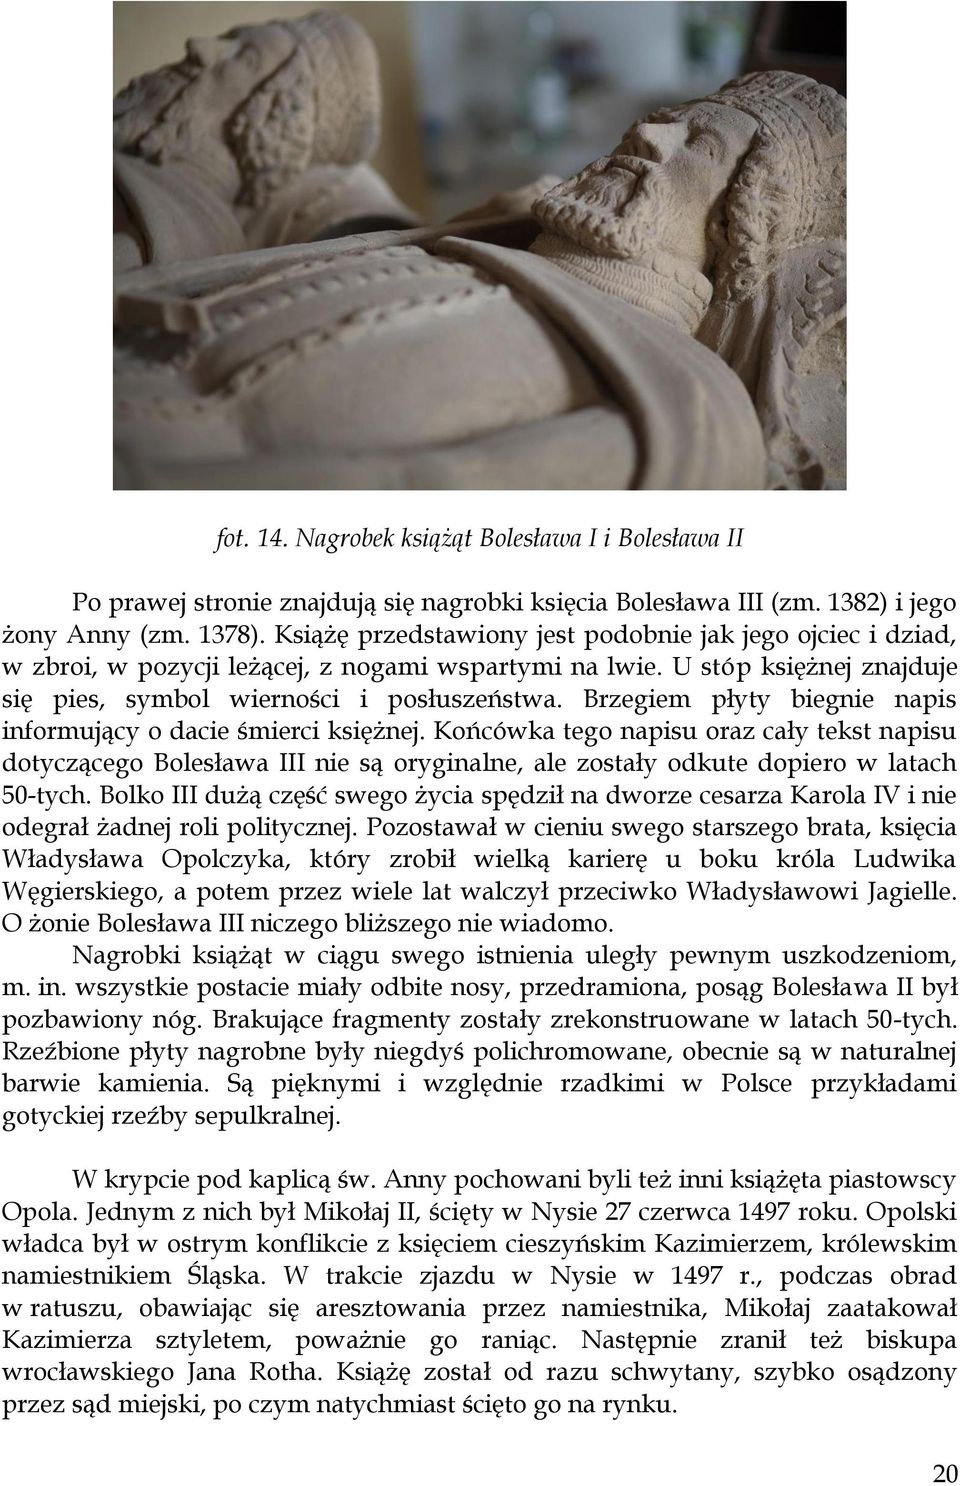 Brzegiem płyty biegnie napis informujący o dacie śmierci księżnej. Końcówka tego napisu oraz cały tekst napisu dotyczącego Bolesława III nie są oryginalne, ale zostały odkute dopiero w latach 50-tych.